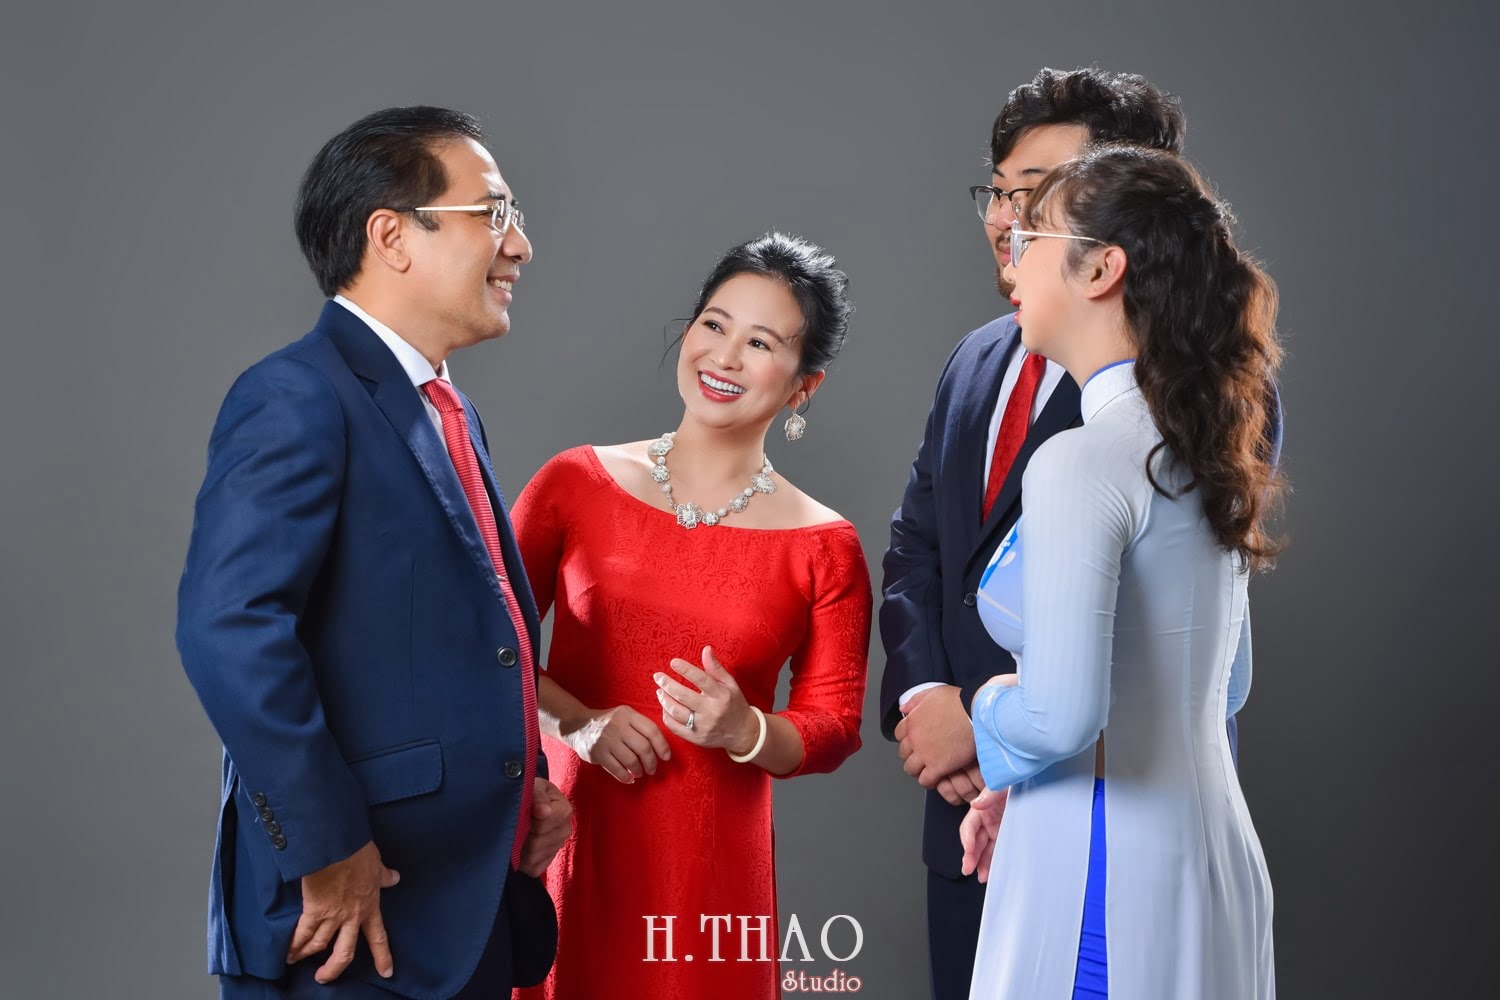 Anh gia dinh 4 nguoi 10 min - 45 cách tạo dáng chụp ảnh gia đình 4 người ấn tượng nhất - HThao Studio